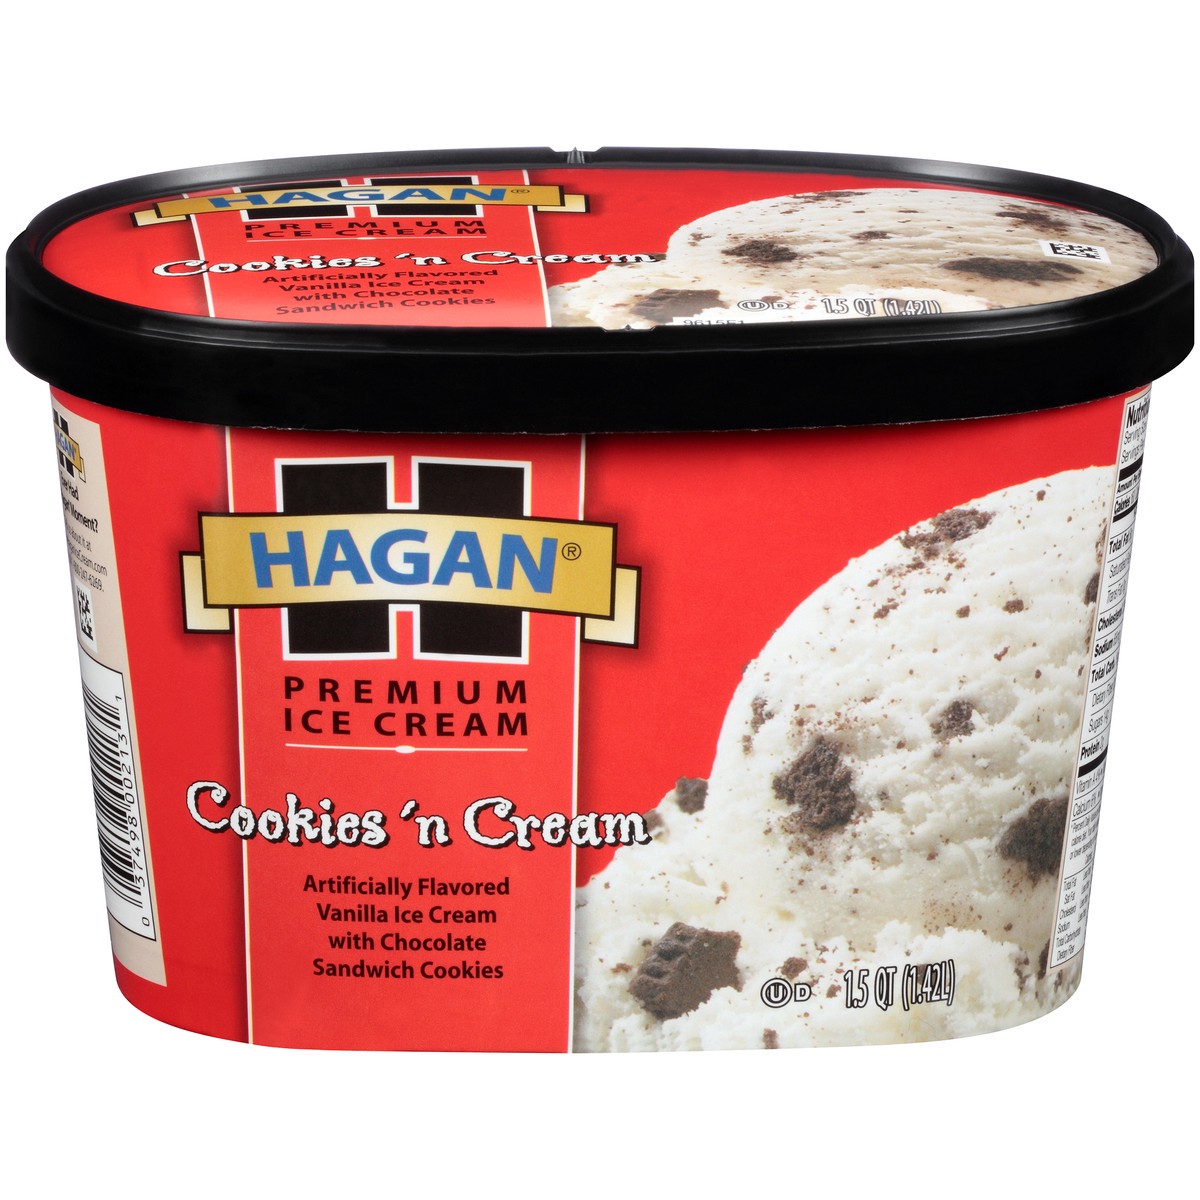 slide 1 of 10, Hagan Cookies 'N Cream Premium Ice Cream 1.5 qt. Tub, 1.42 liter